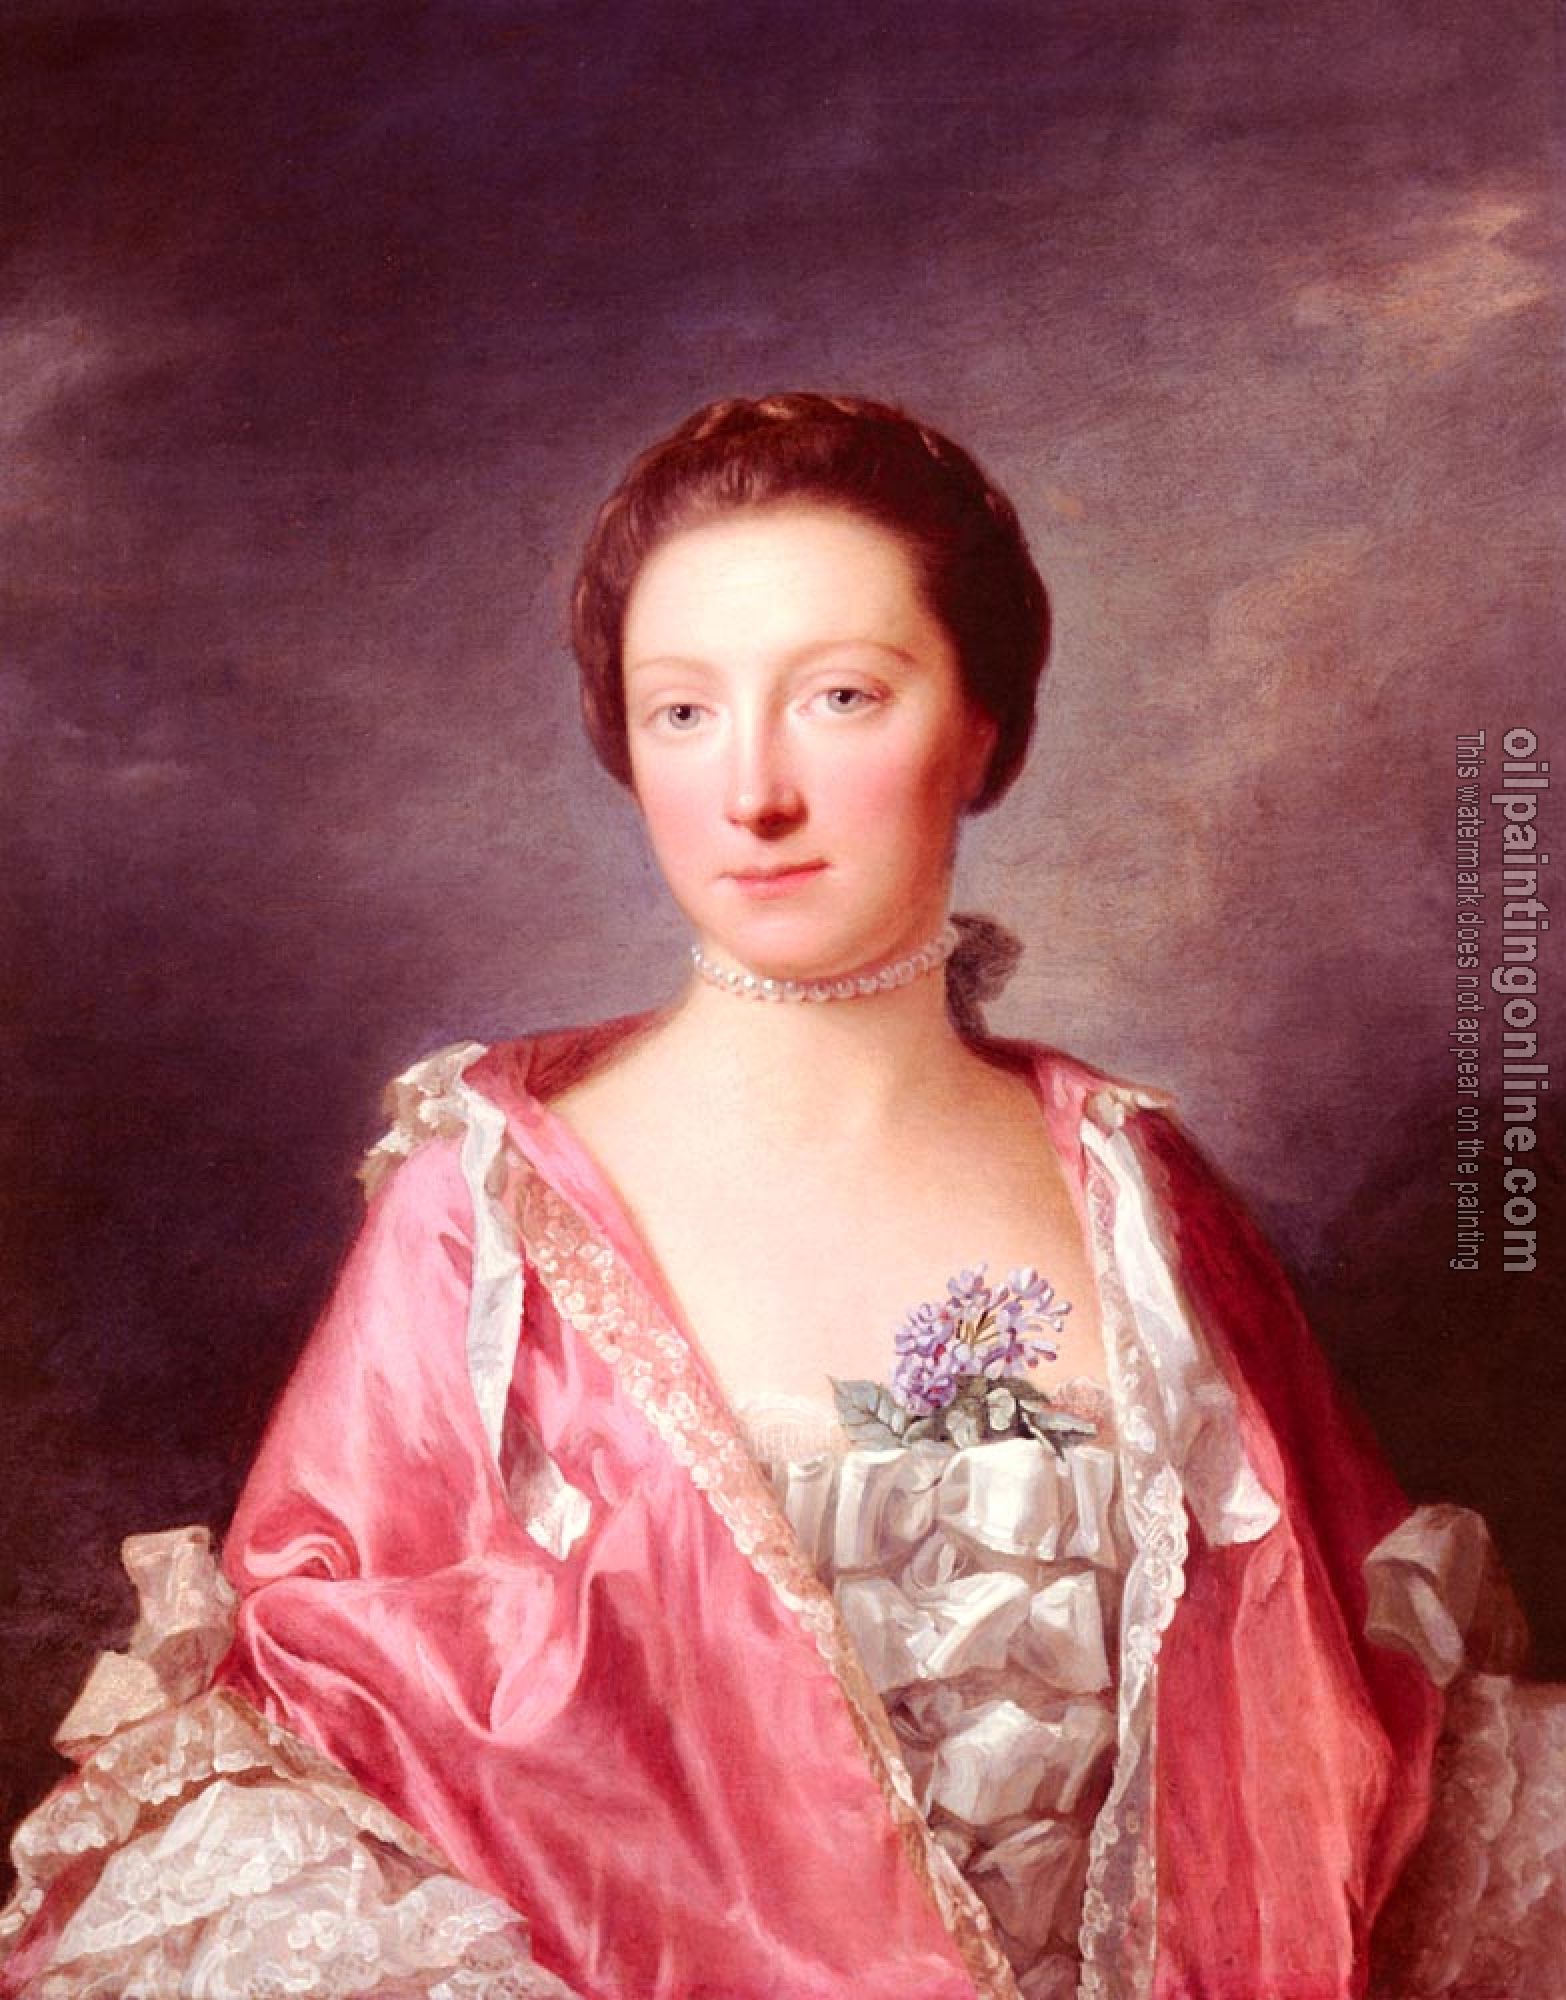 Ramsay, Allan - Portrait Of Elizabeth Gunning, Duchess Of Argyll